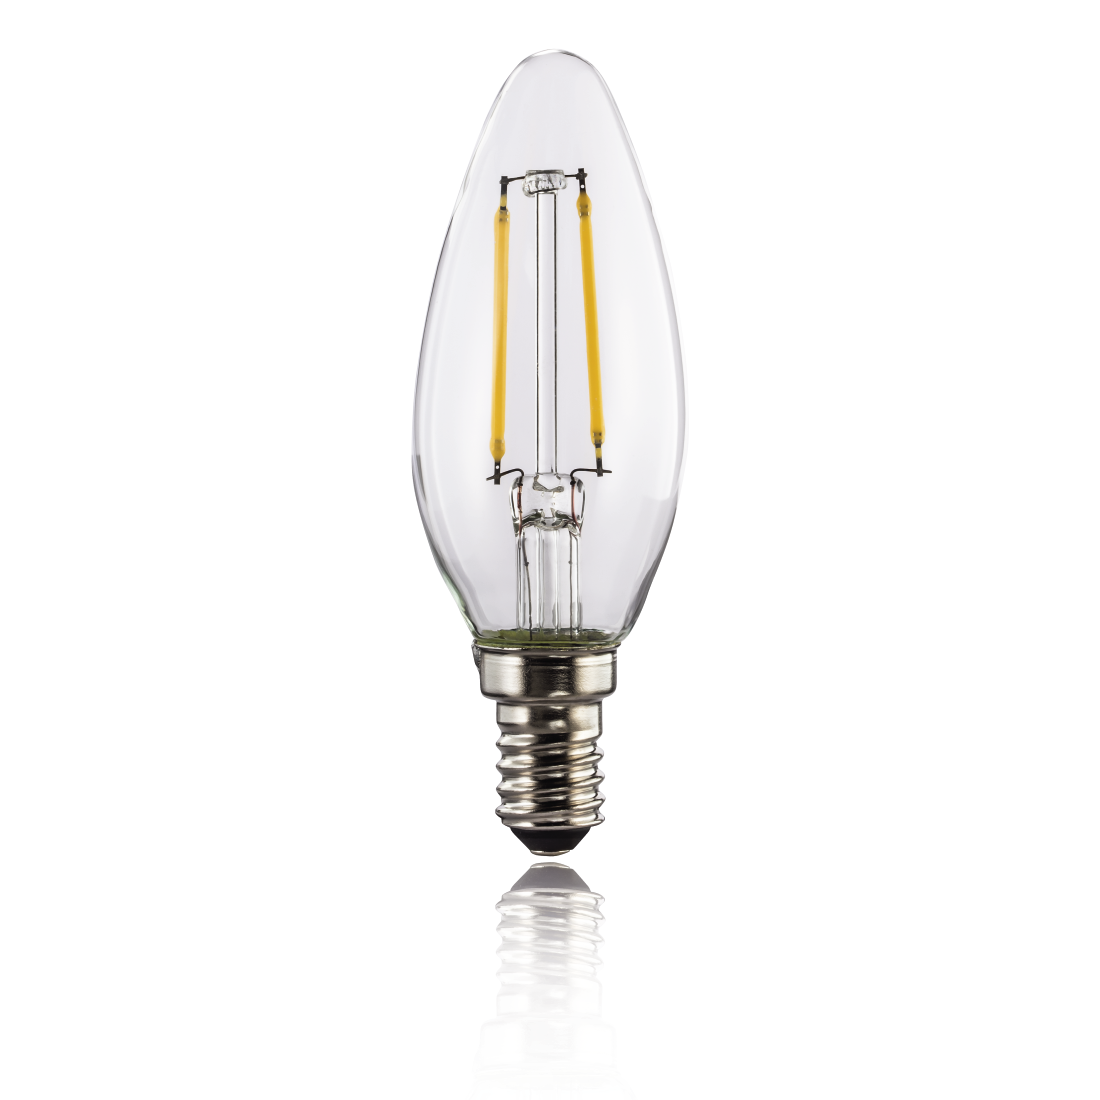 abx2 High-Res Image 2 - Xavax, Ampoule filament LED, E14, 250lm rempl. ampoule bougie 25W, blc chaud